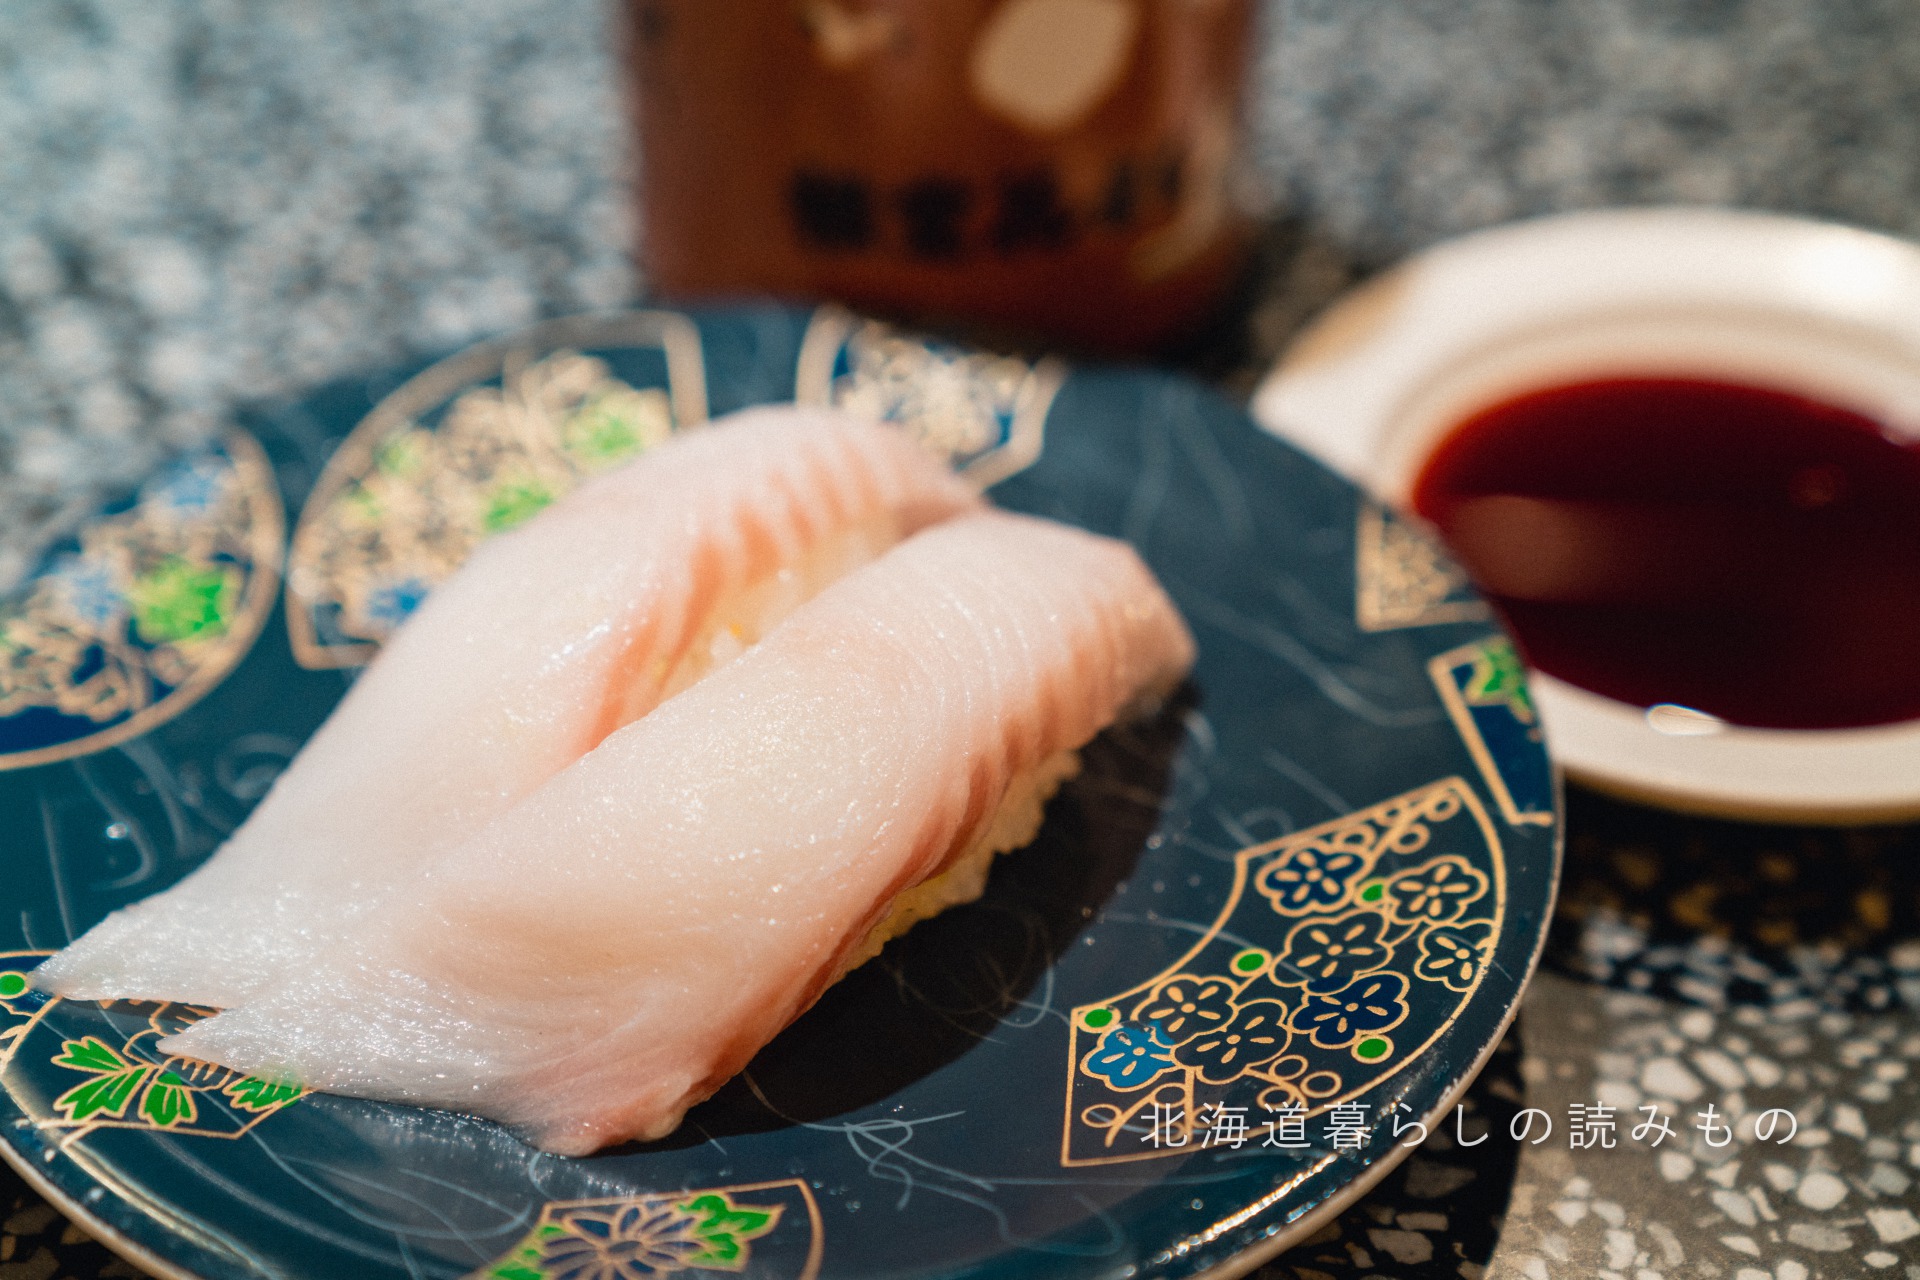 迴轉壽司根室花丸的菜單上的「Flatfish」